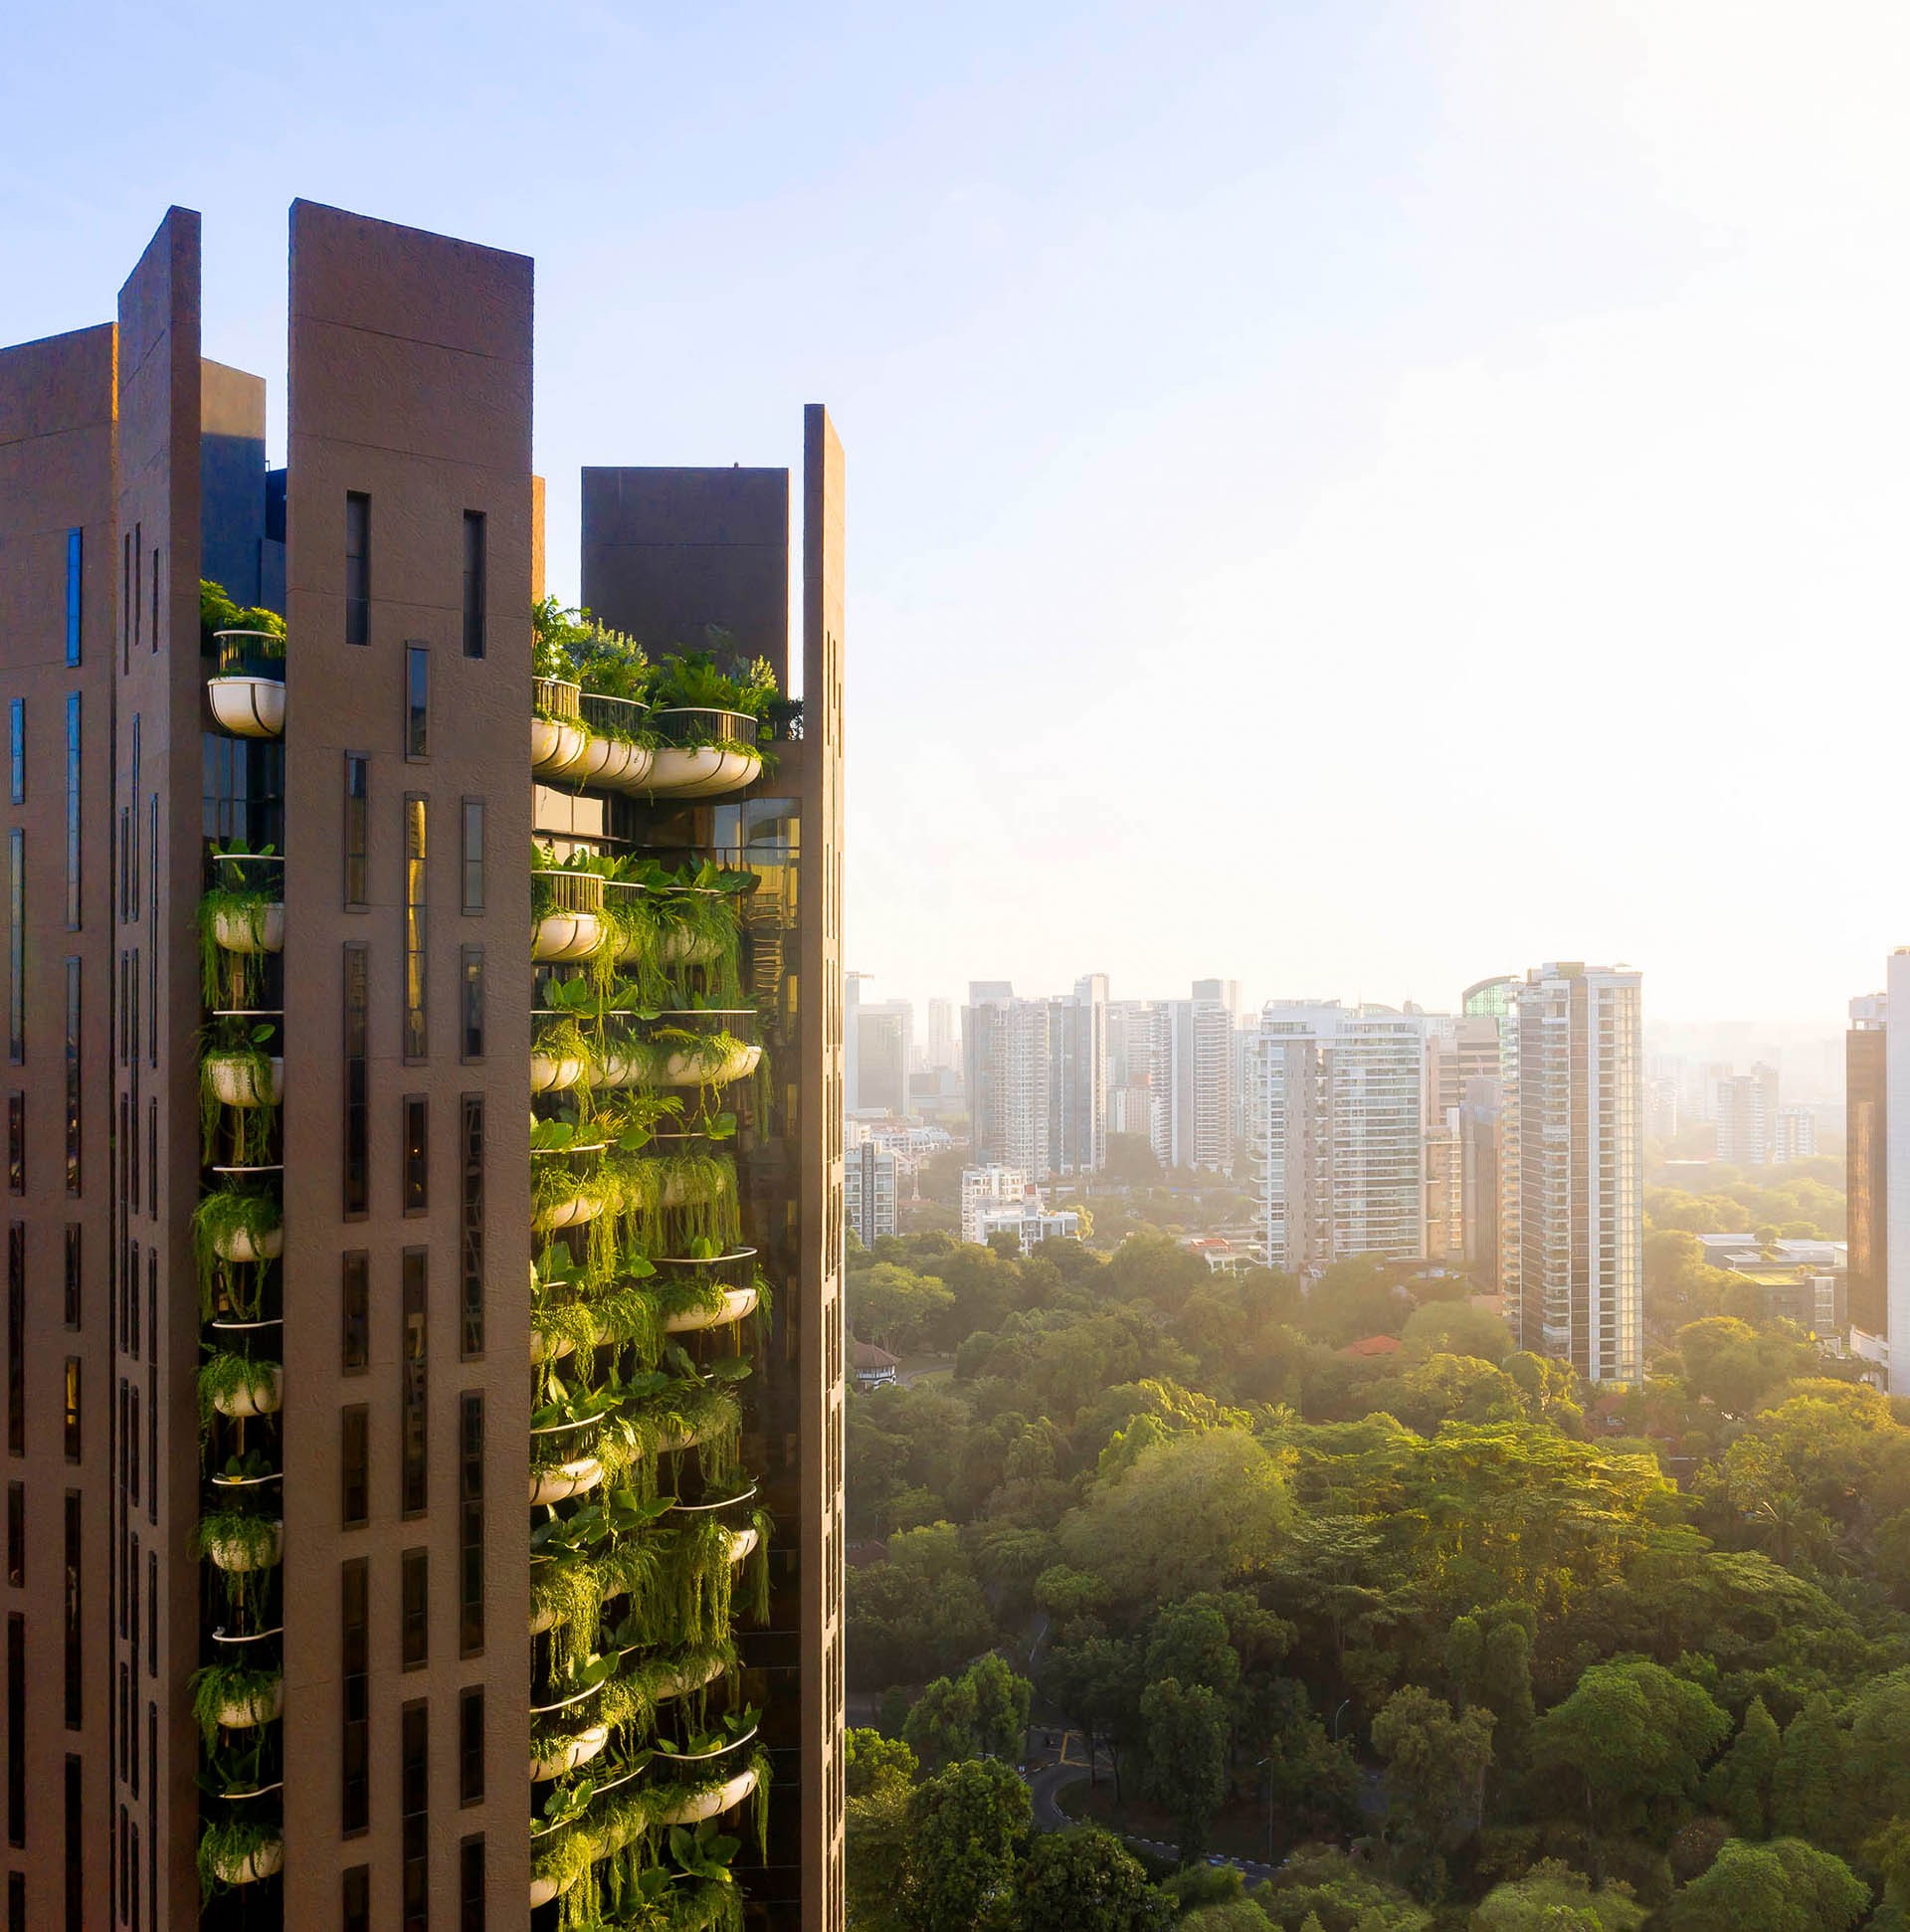 希瑟威克（Heatherwick）的伊甸园（Eden），这家工作室在新加坡的第一个住宅项目